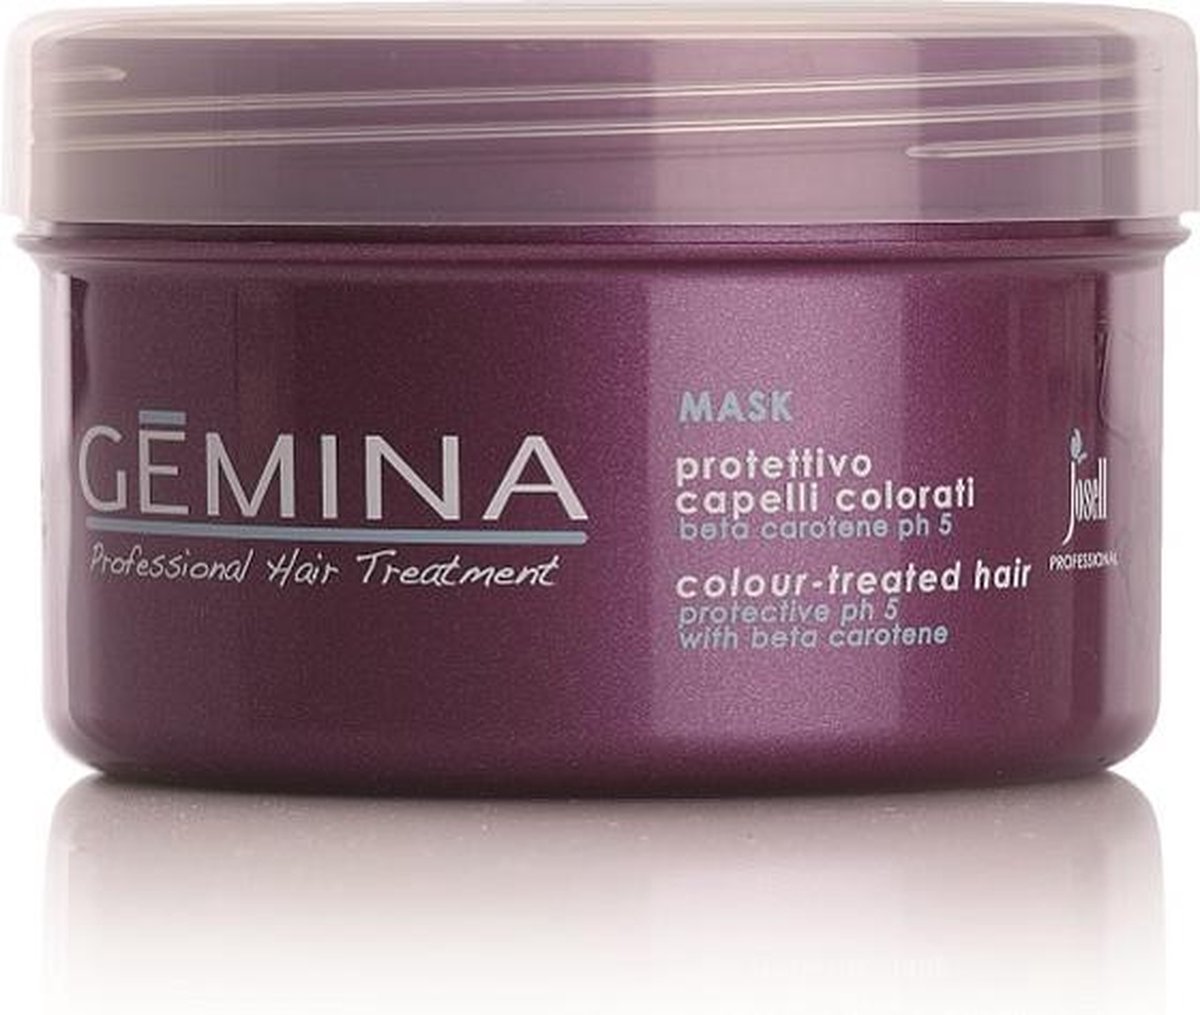 GEMINA Beta-Carotene Gekleurd Haar Masker, 500ml